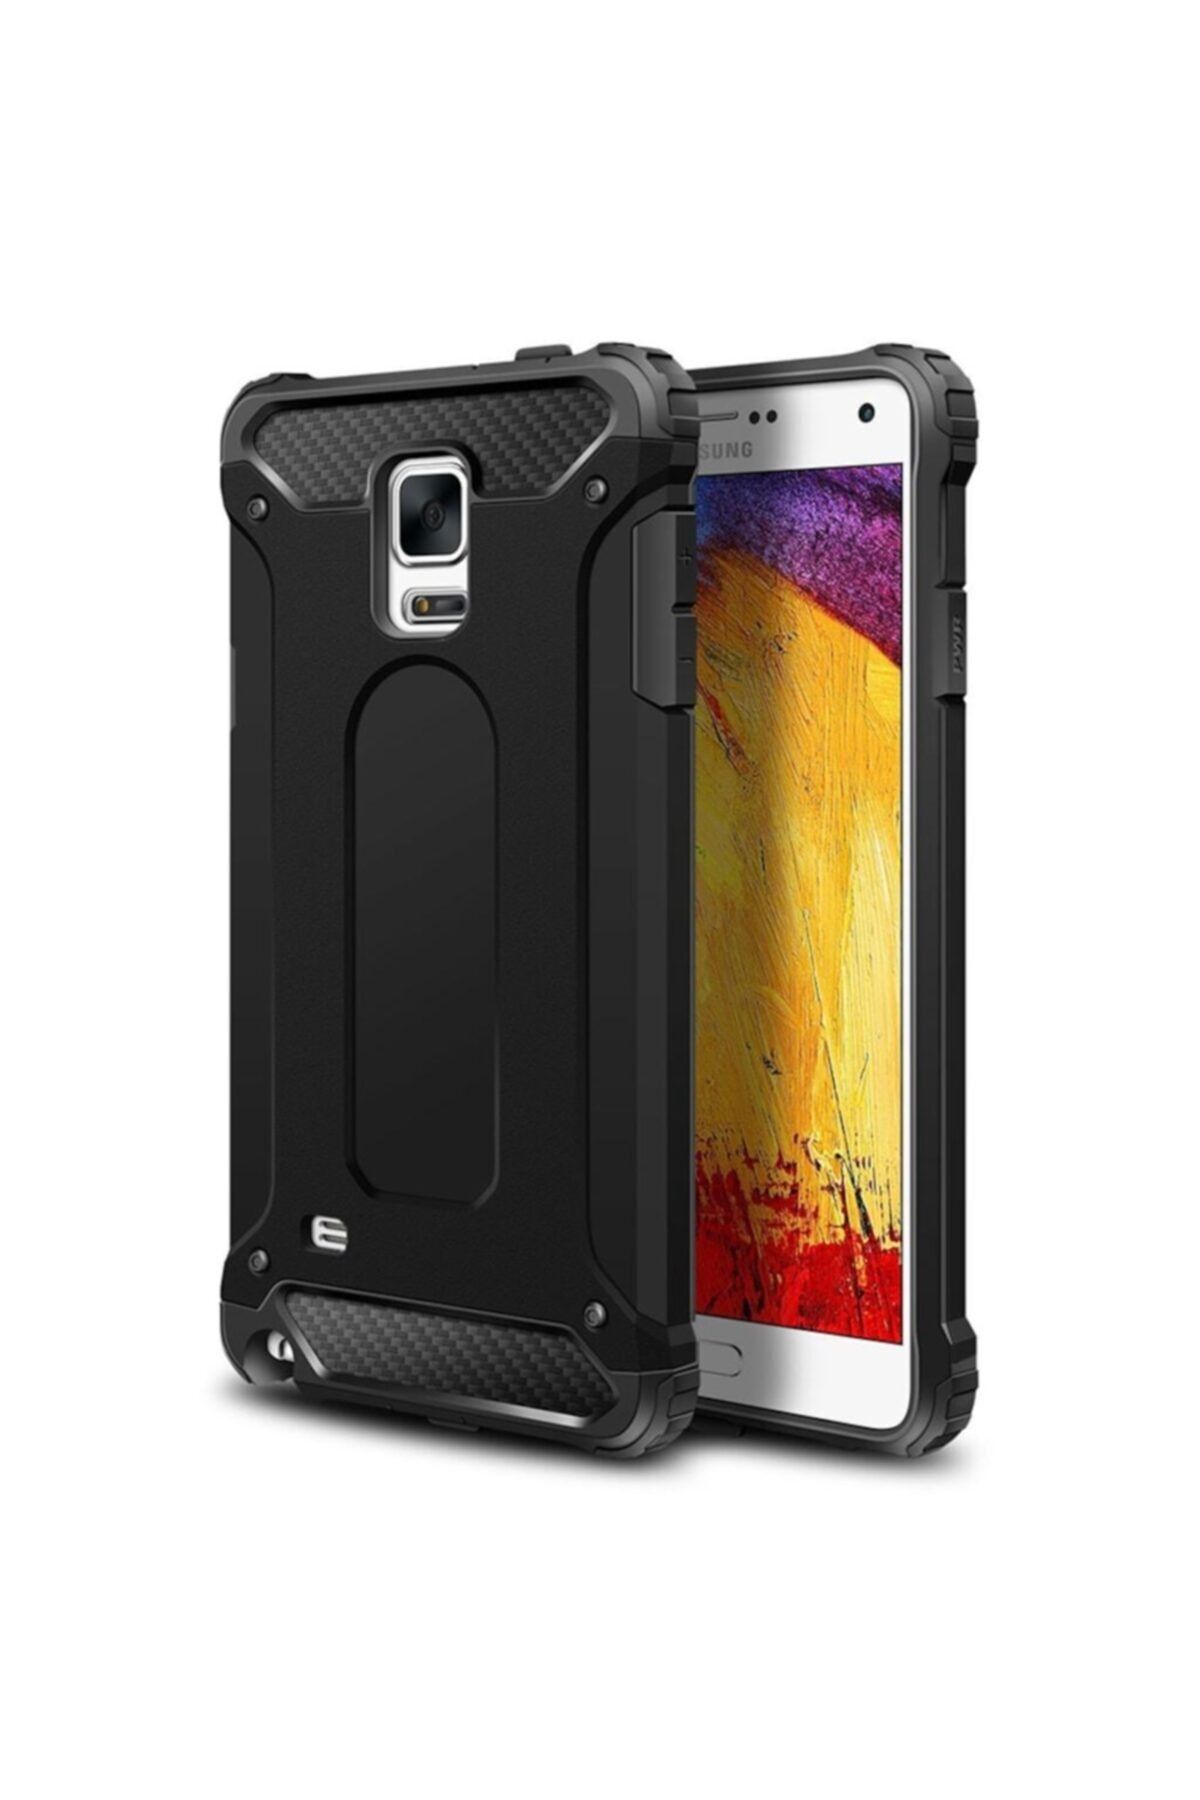 Canpay Samsung Galaxy Note 4 Uyumlu Kılıf Kulaklık Ve Şarj Girişi Korumalı Armor Case